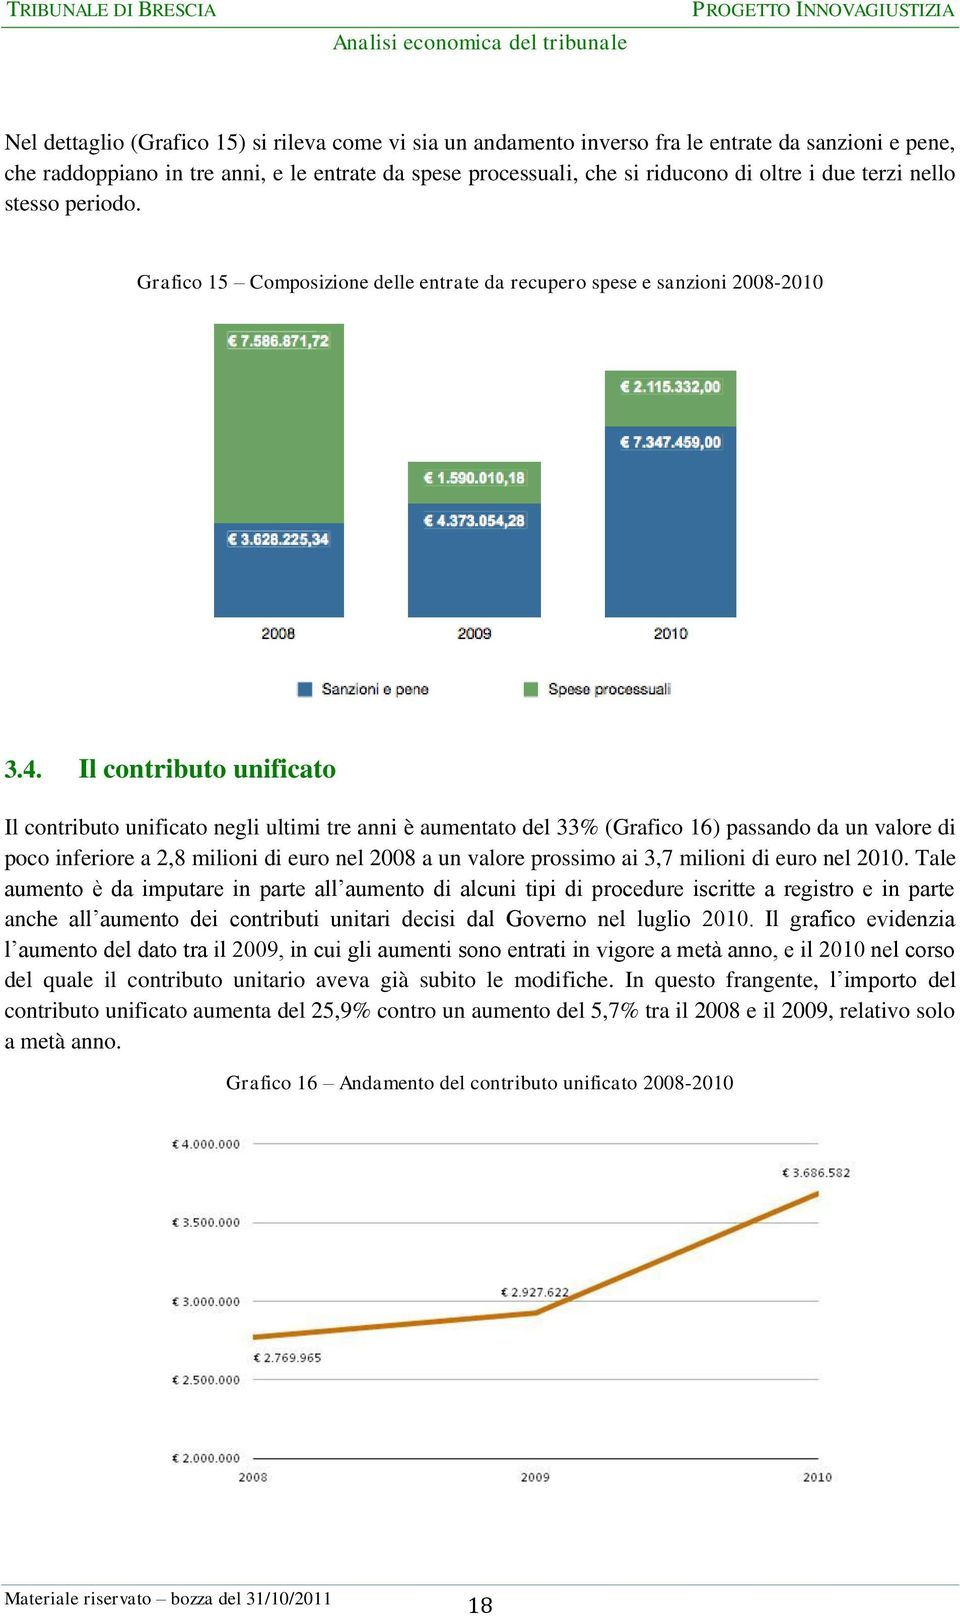 Il contributo unificato Il contributo unificato negli ultimi tre anni è aumentato del 33% (Grafico 16) passando da un valore di poco inferiore a 2,8 milioni di euro nel 2008 a un valore prossimo ai